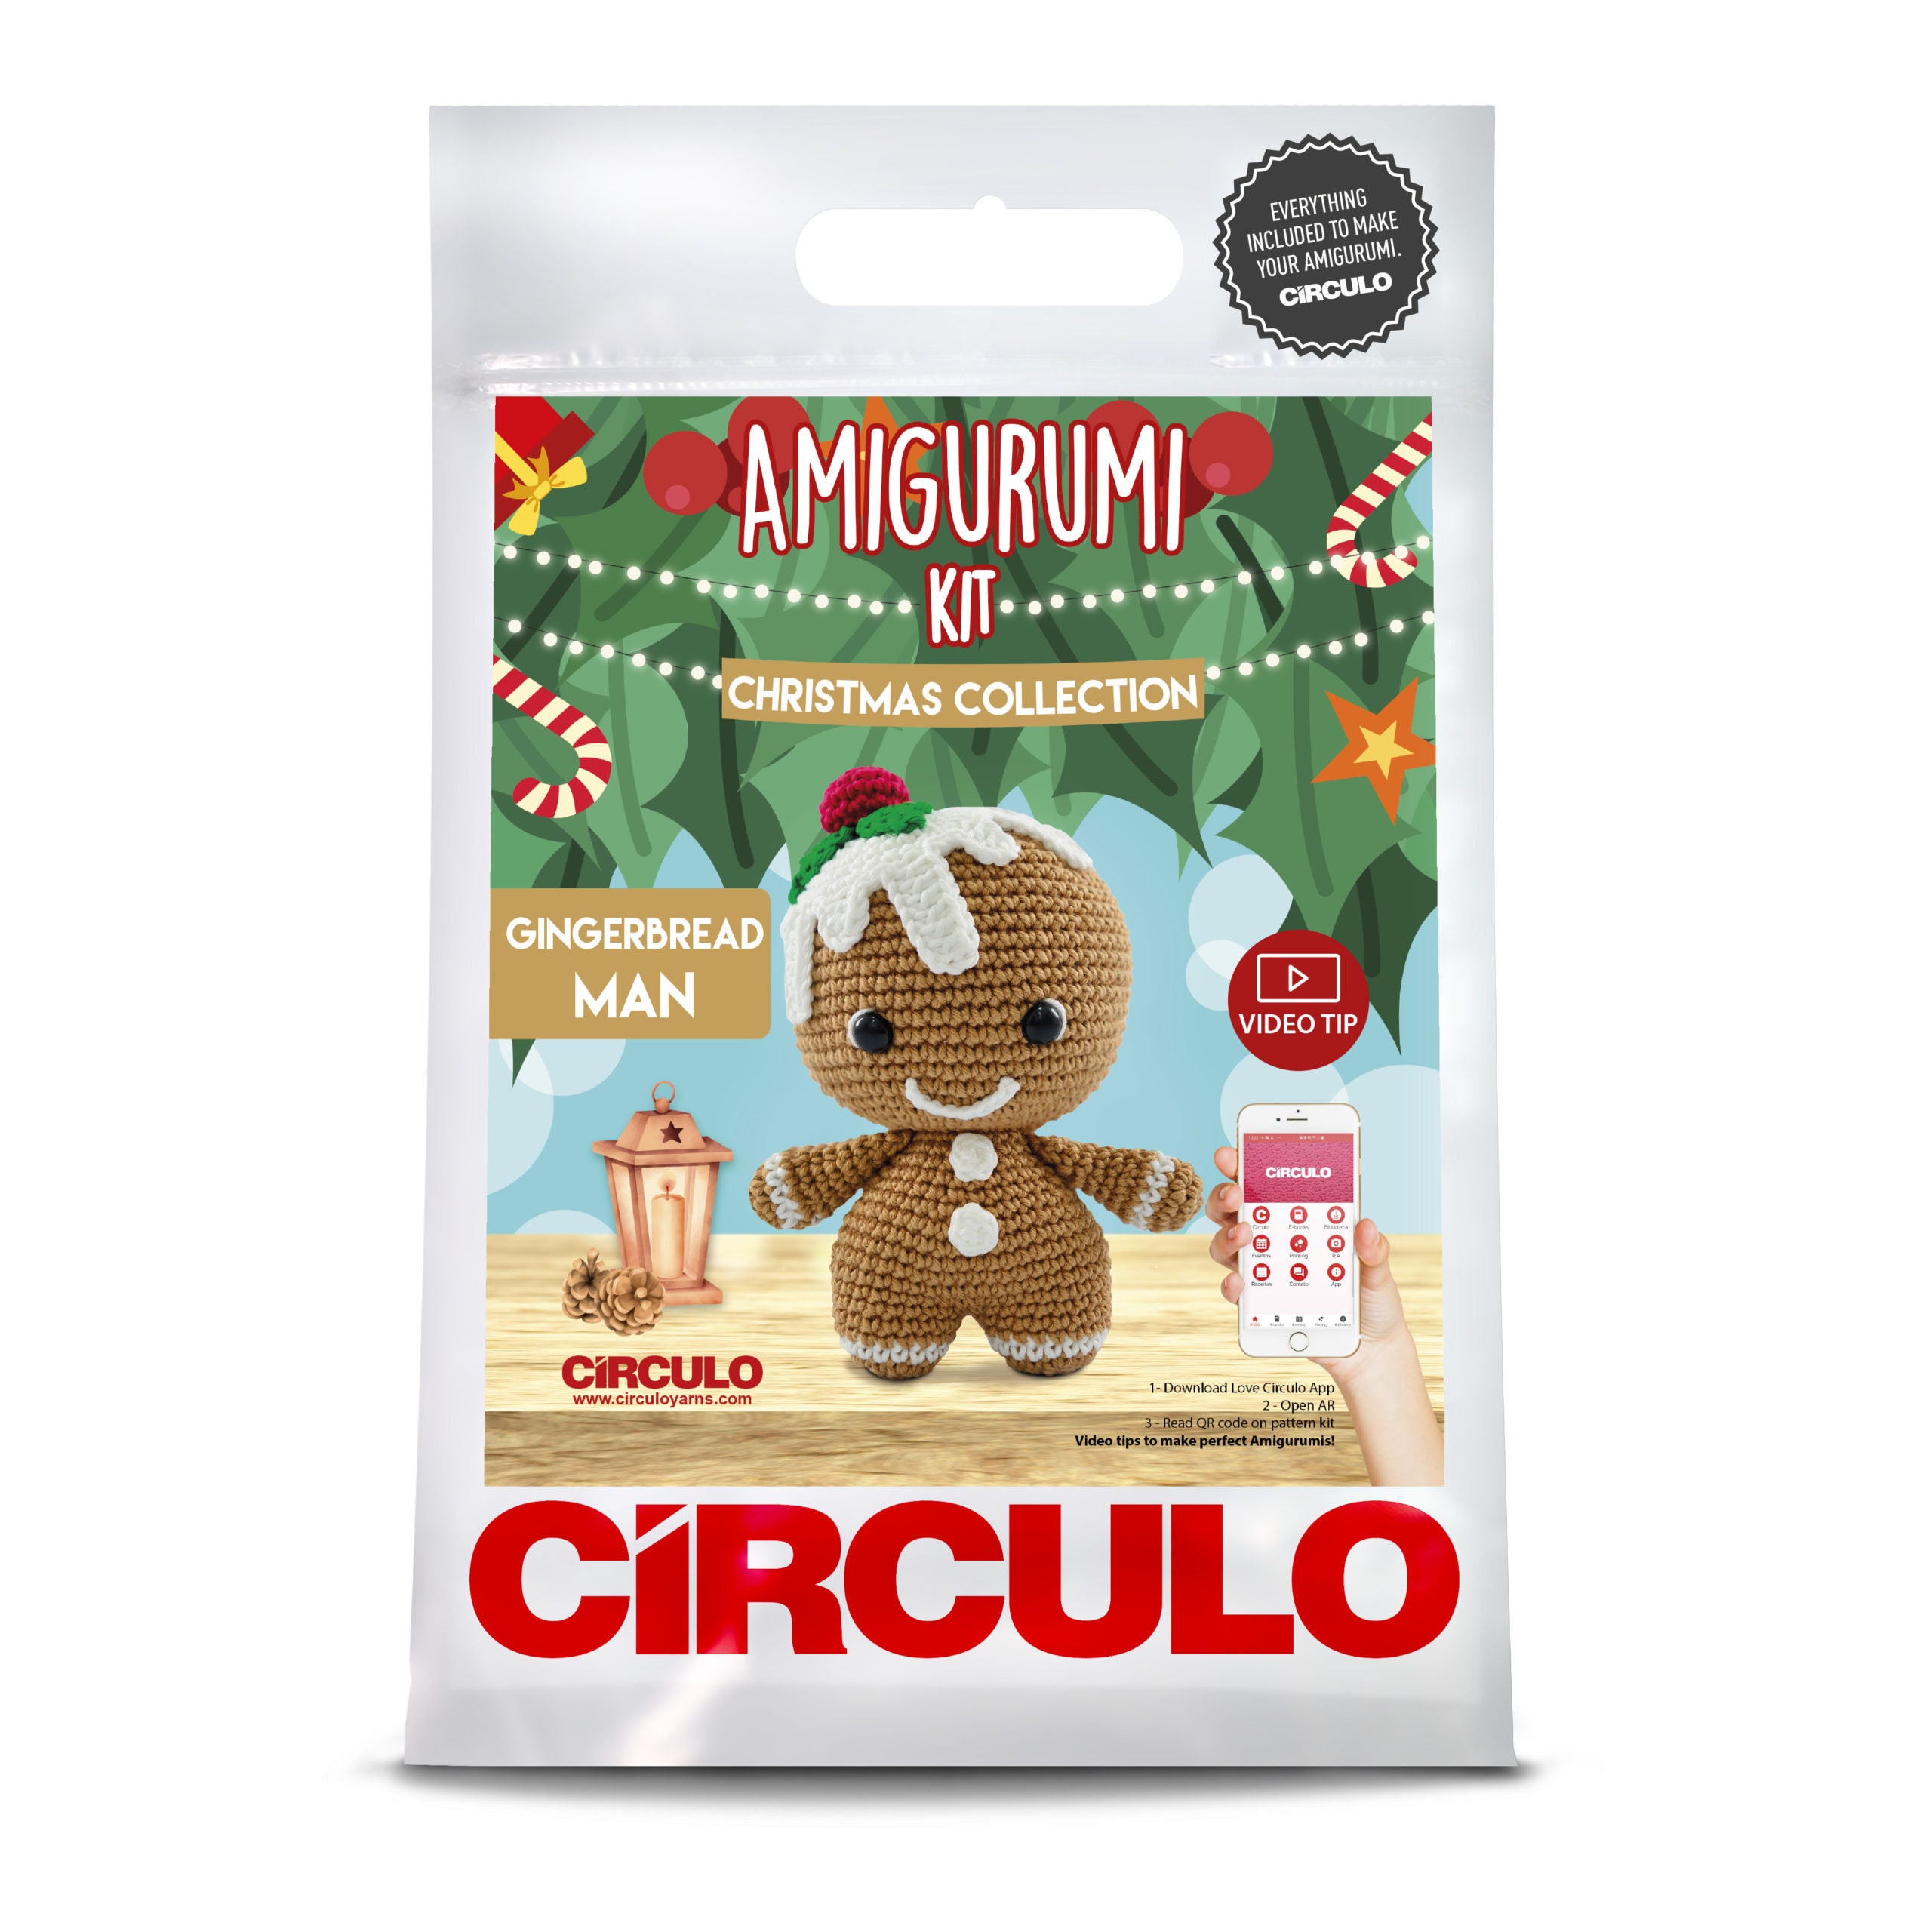 Circulo Christmas Crochet Kits -  UK